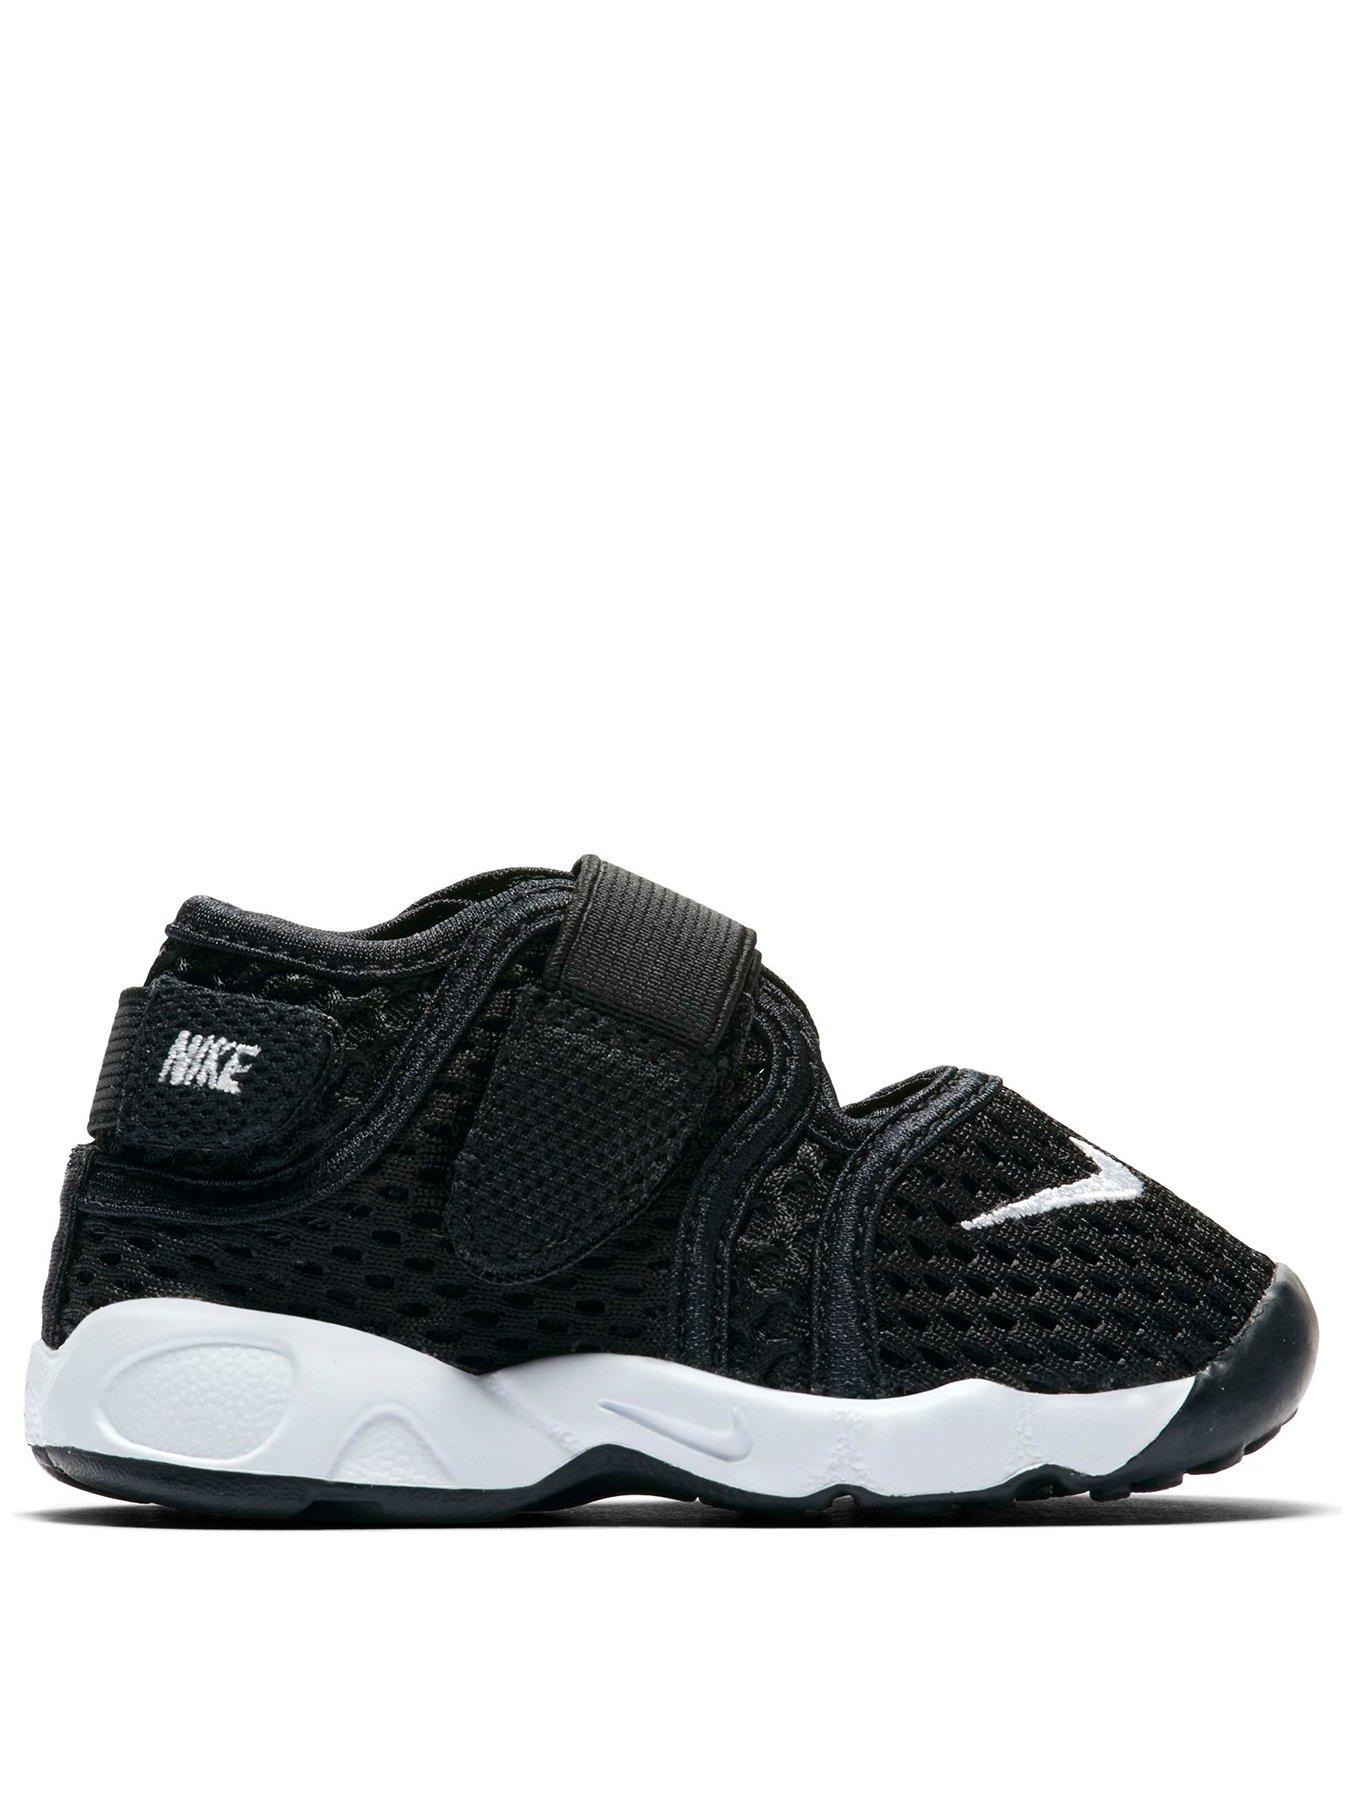 Nike Rift Junior Sandals - Black/White 